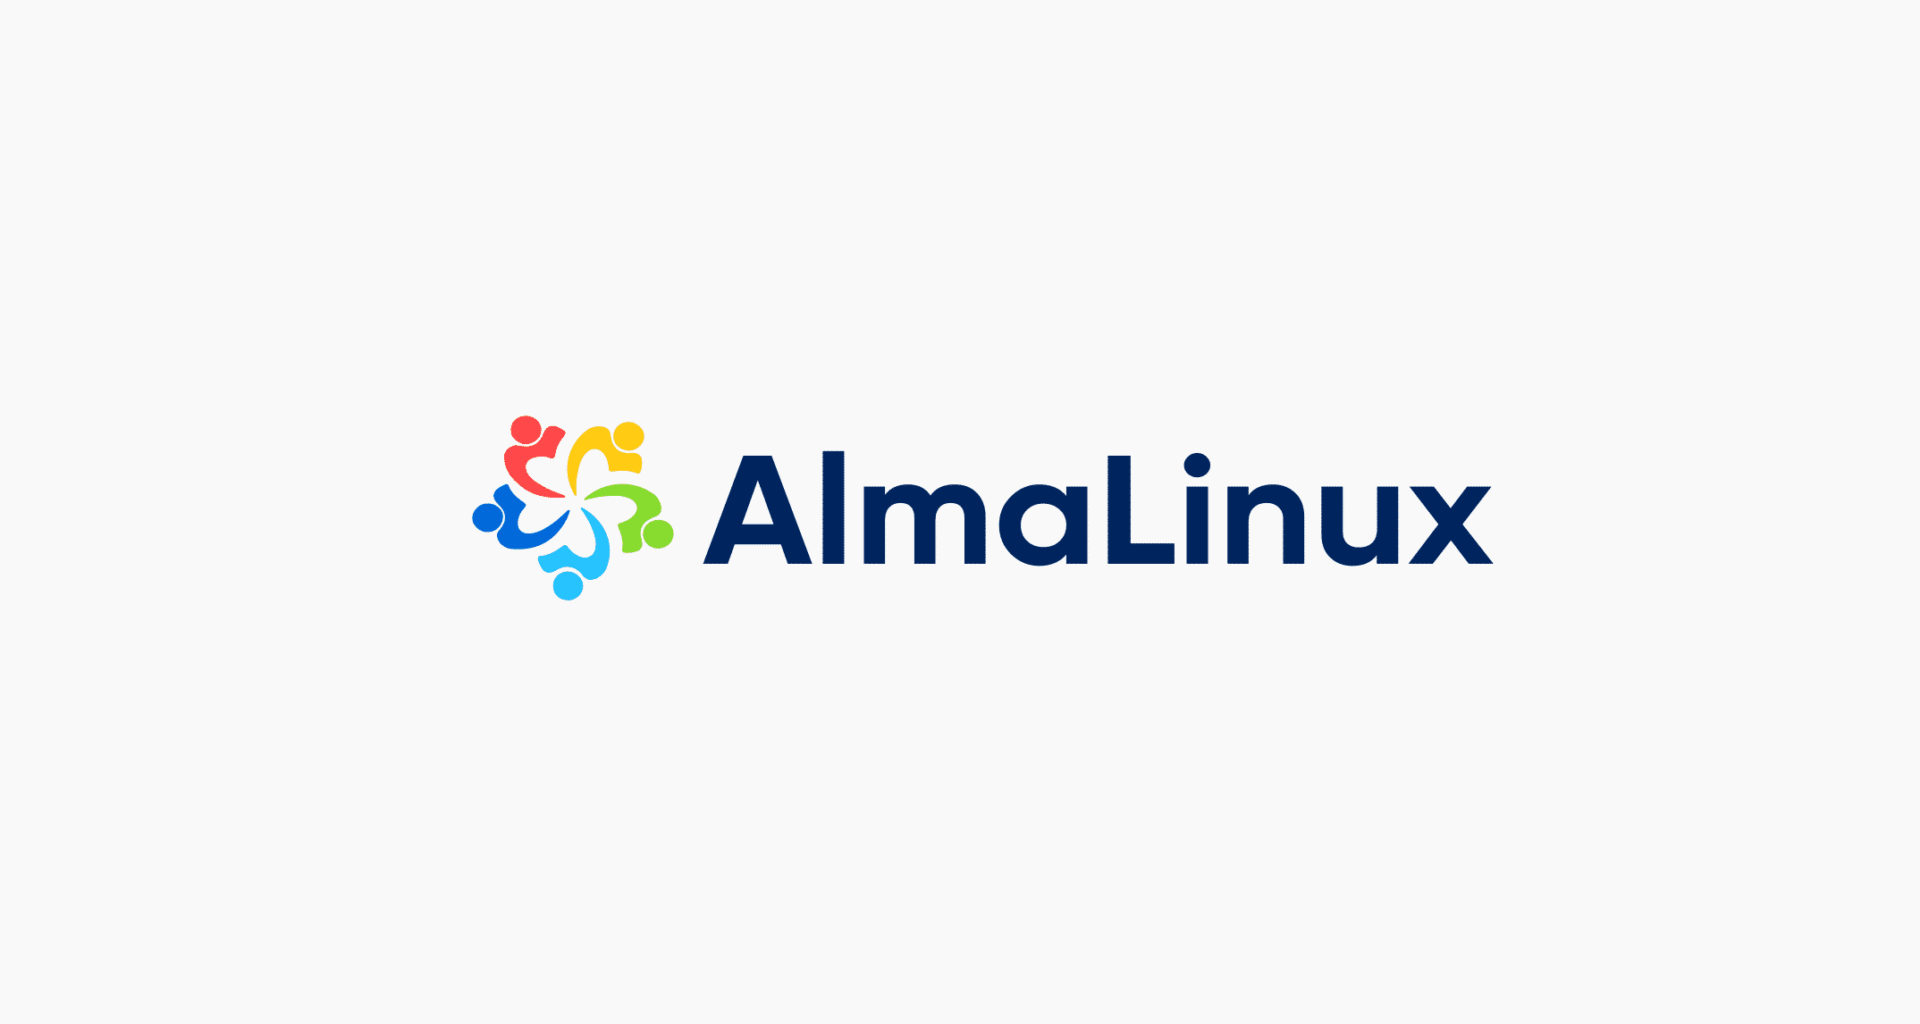 almalinux nasıl kurulur, almalinux nedir, almalinux kurulumu, almalinux yapılandırma